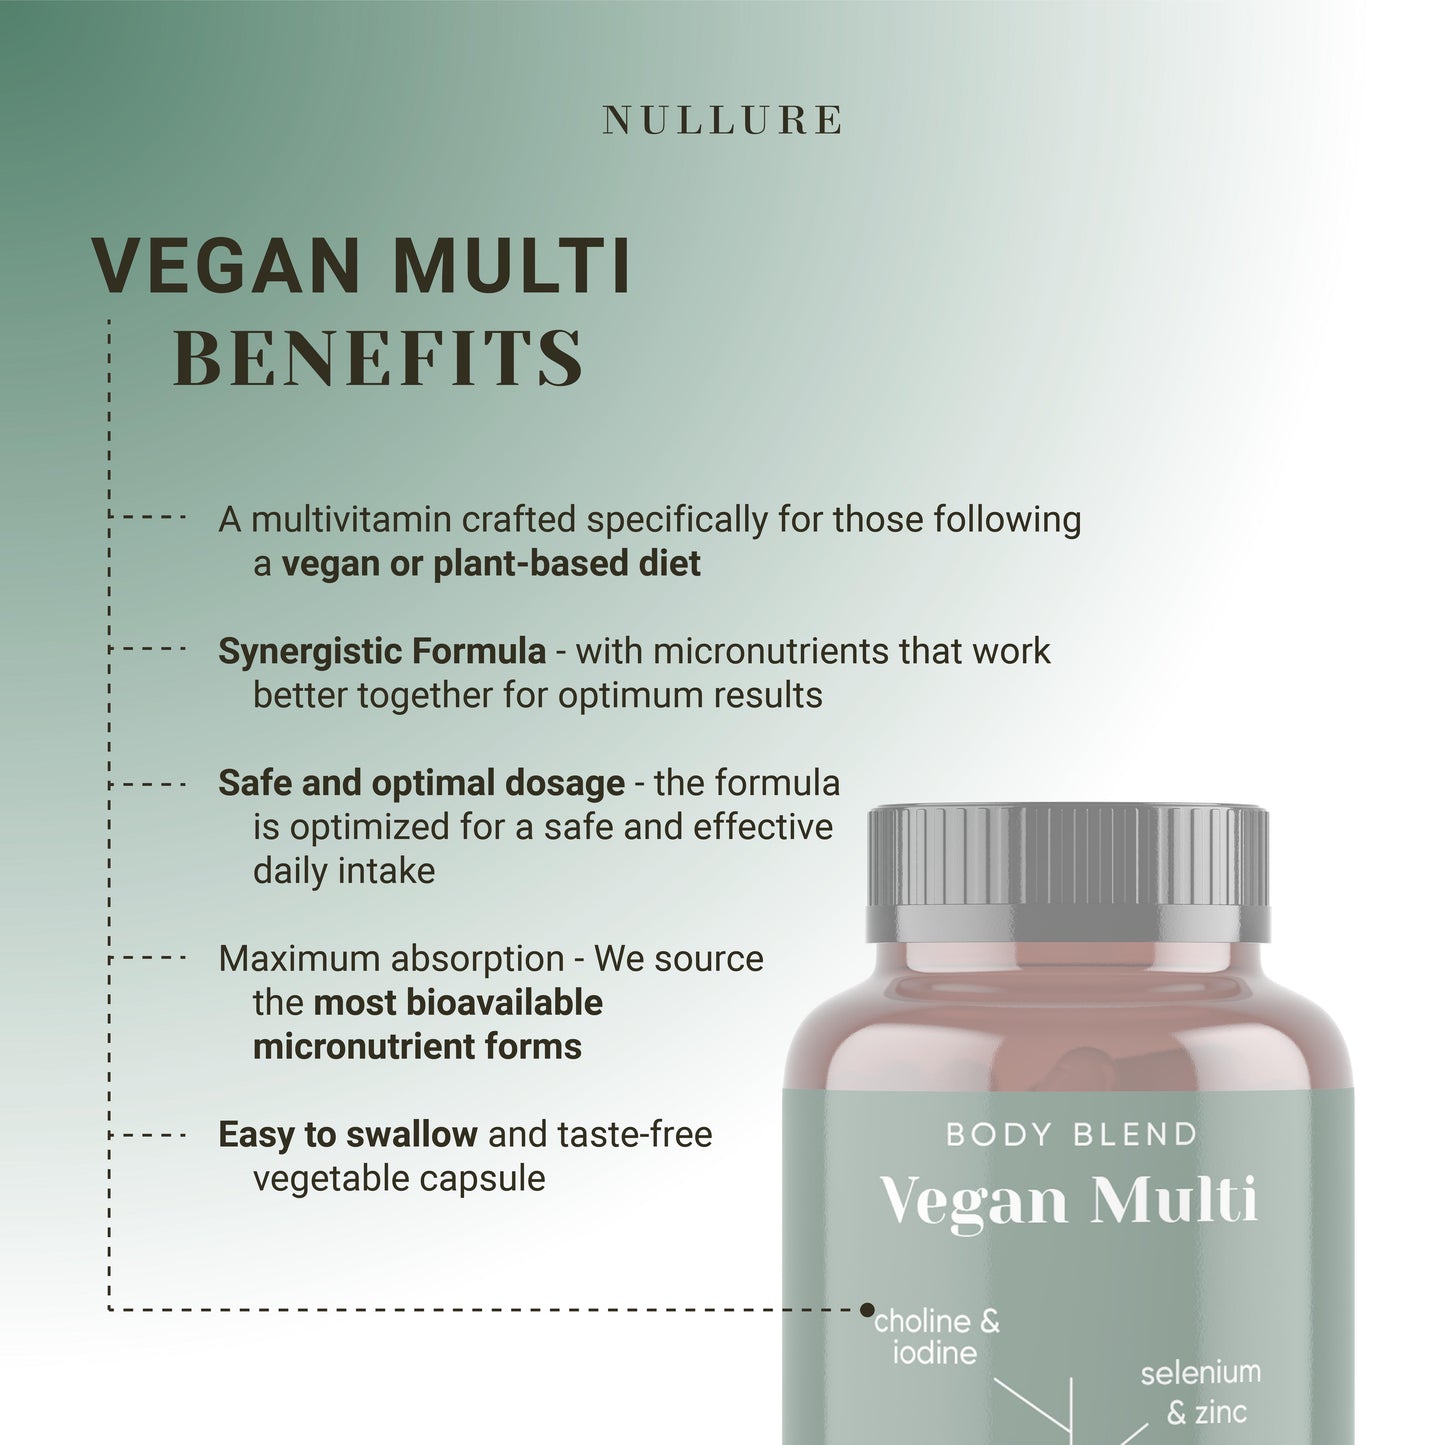 Vegano-multivitaminico-benefici